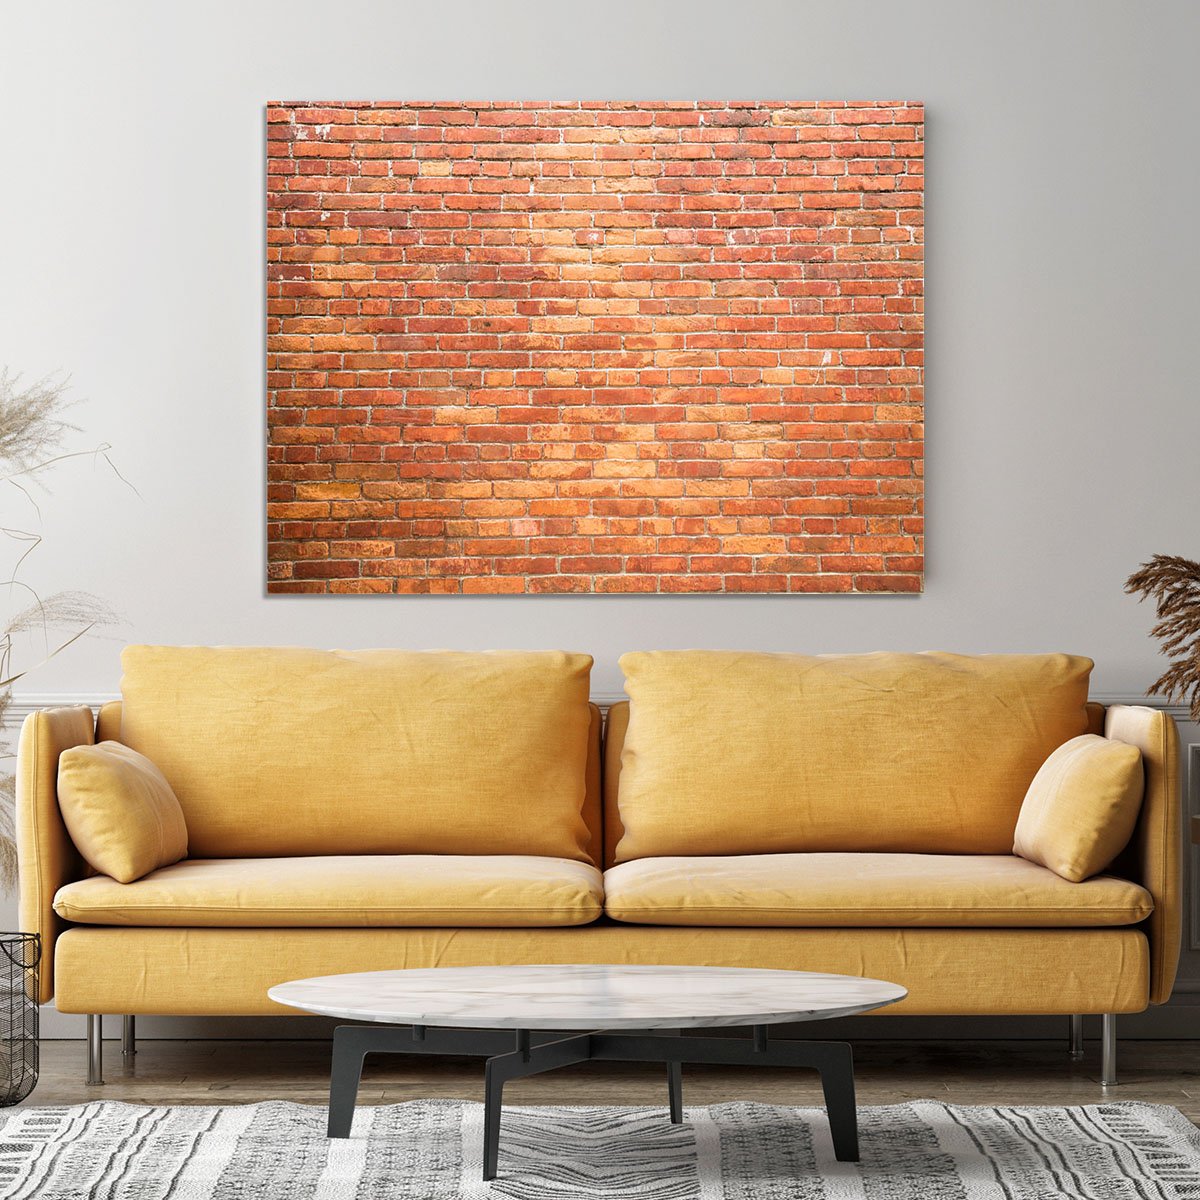 Bricks wall Canvas Print or Poster